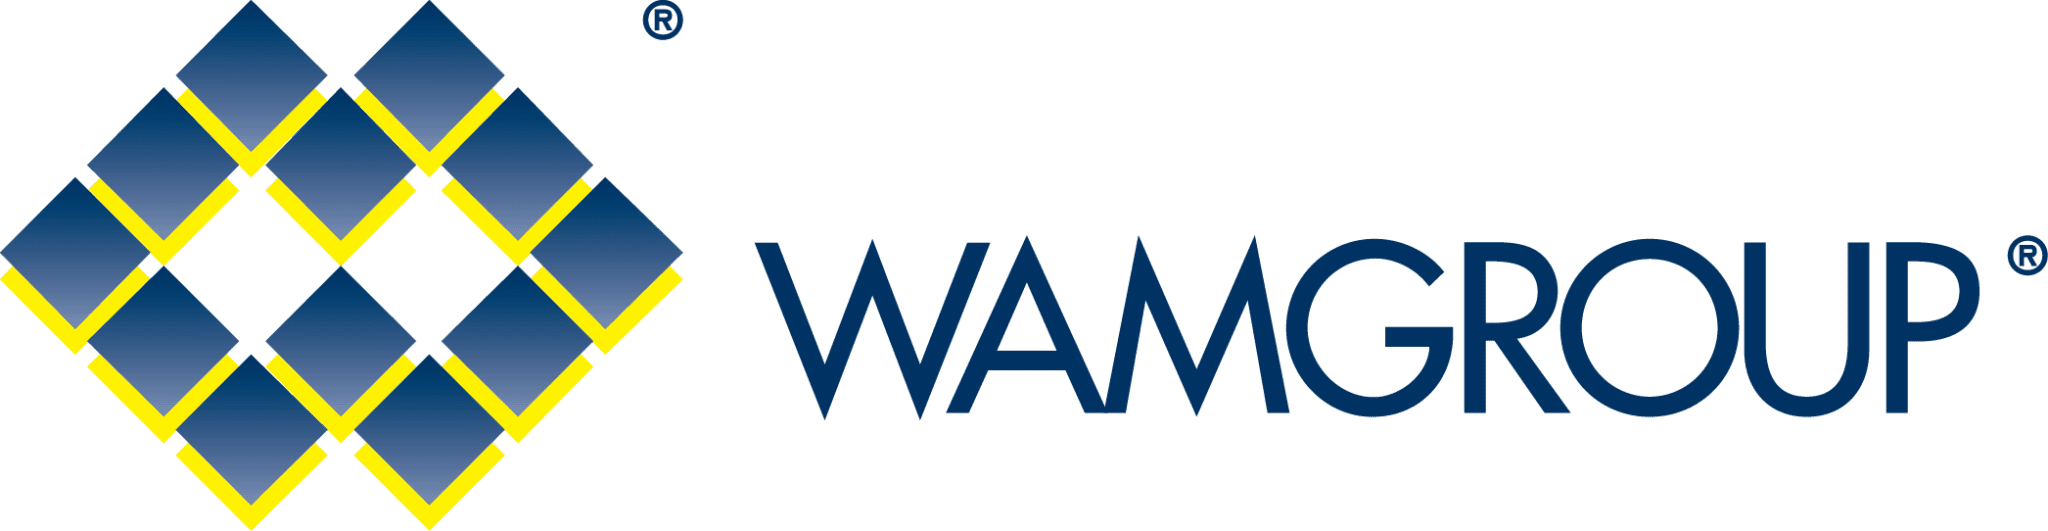 WAMGROUP-S.p.A.-BulkInside-Company-Profile-2048x531